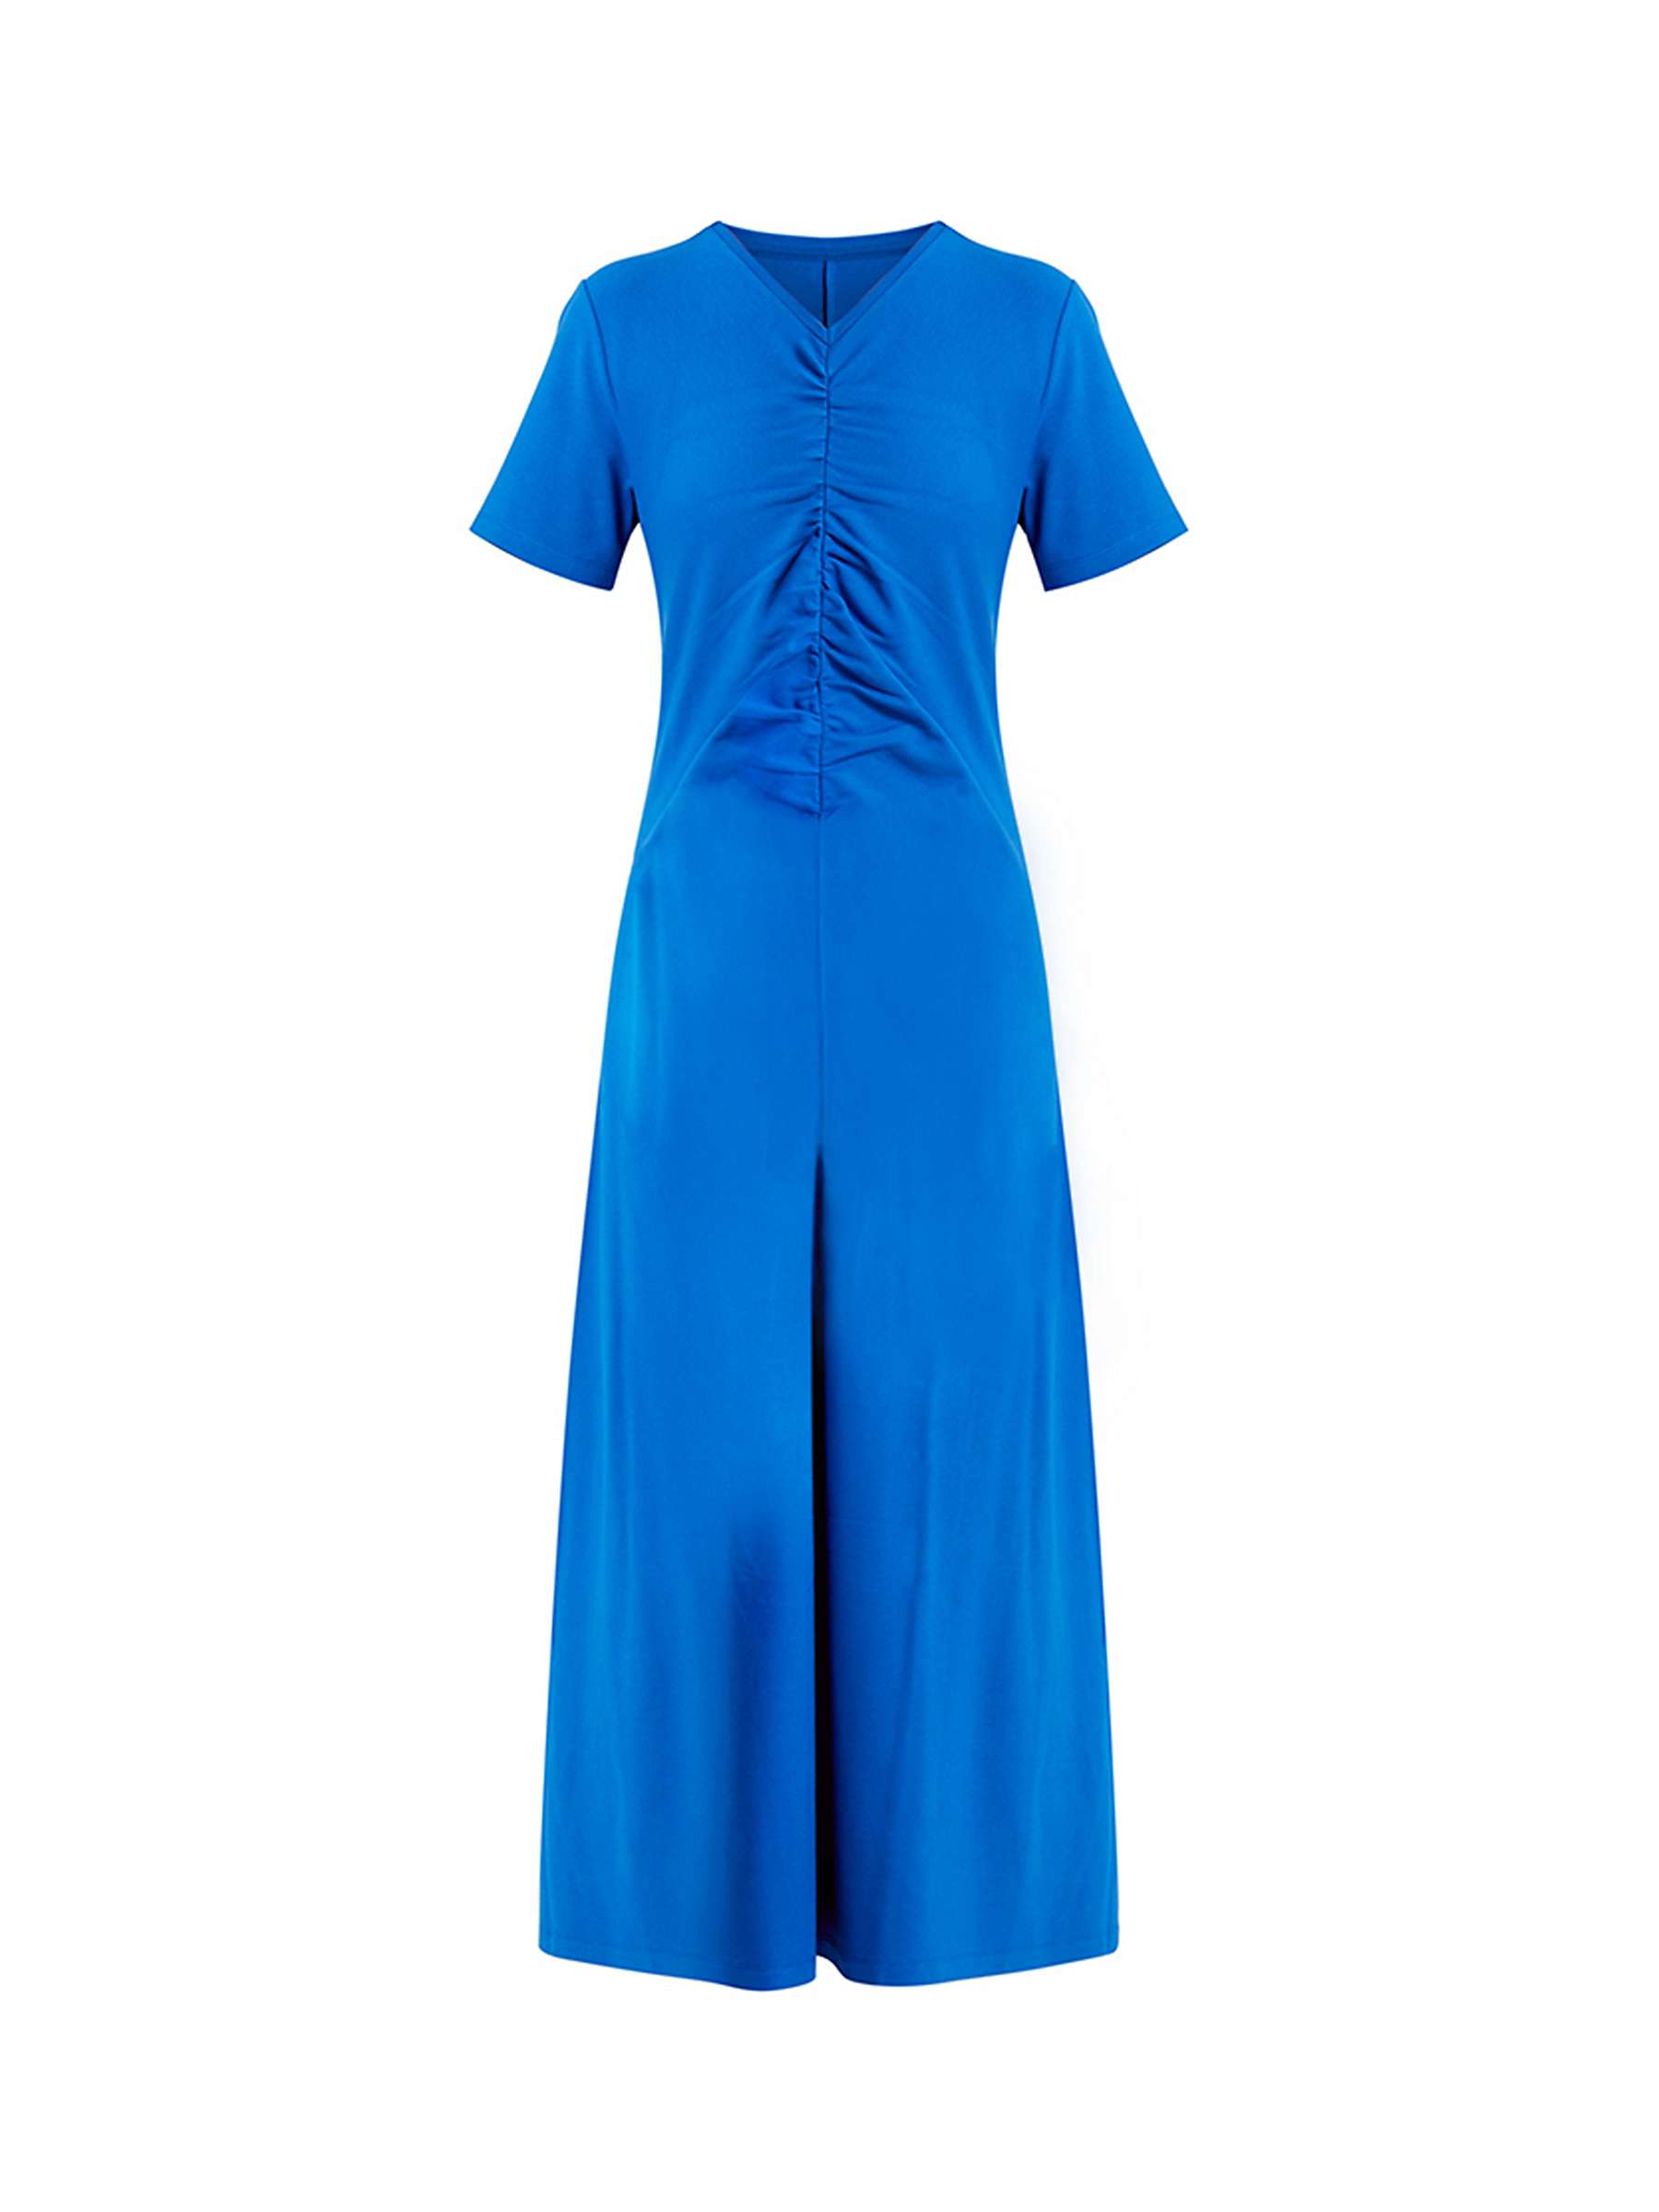 Buy Helen McAlinden Finnley Ruched Jersey Dress, Cobalt Blue Online at johnlewis.com